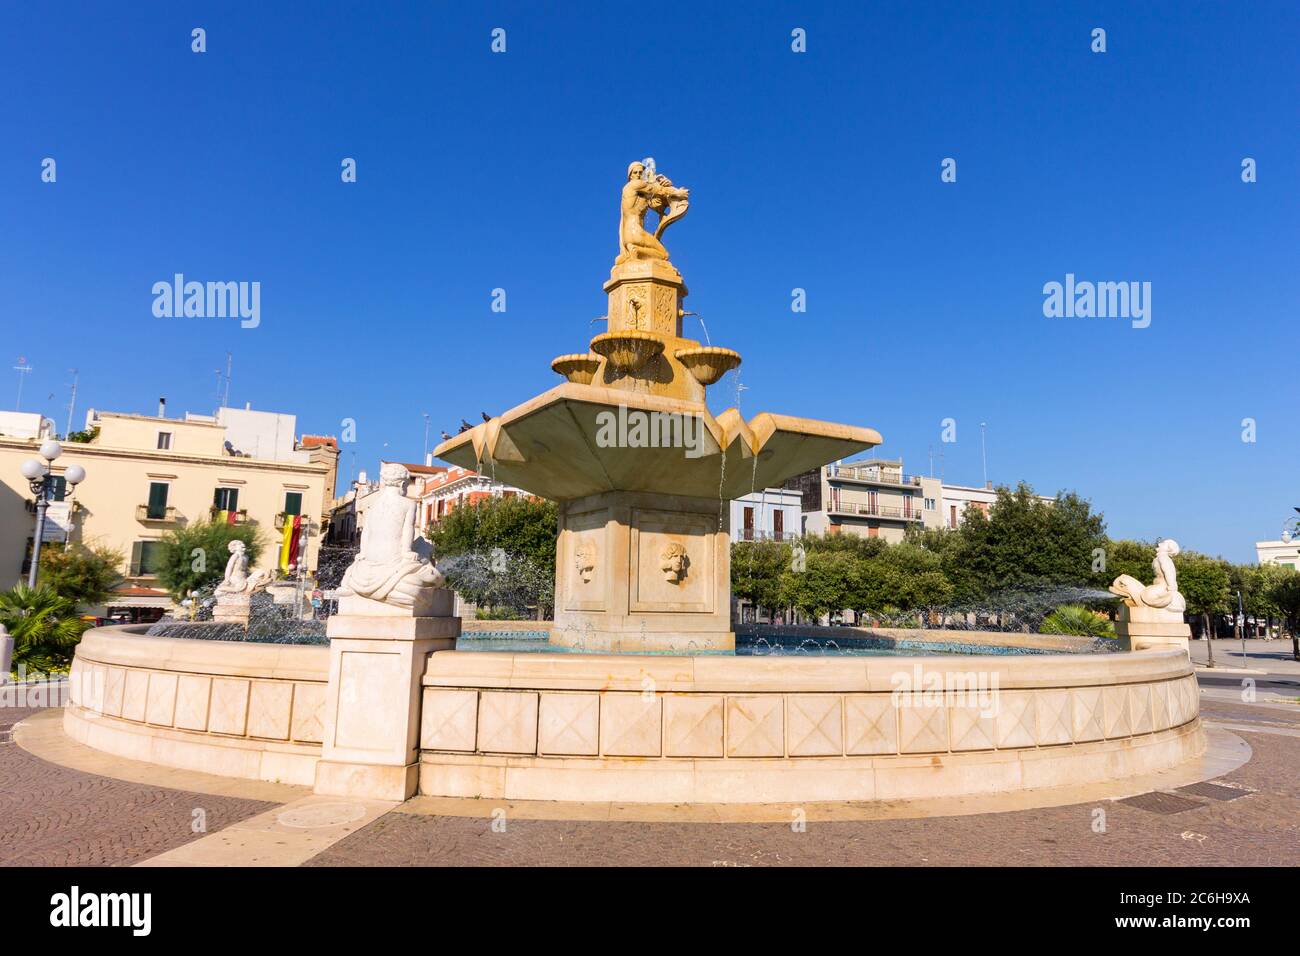 Italia, Puglia, Mola di Bari, fontana in Piazza XX settembre. Foto Stock